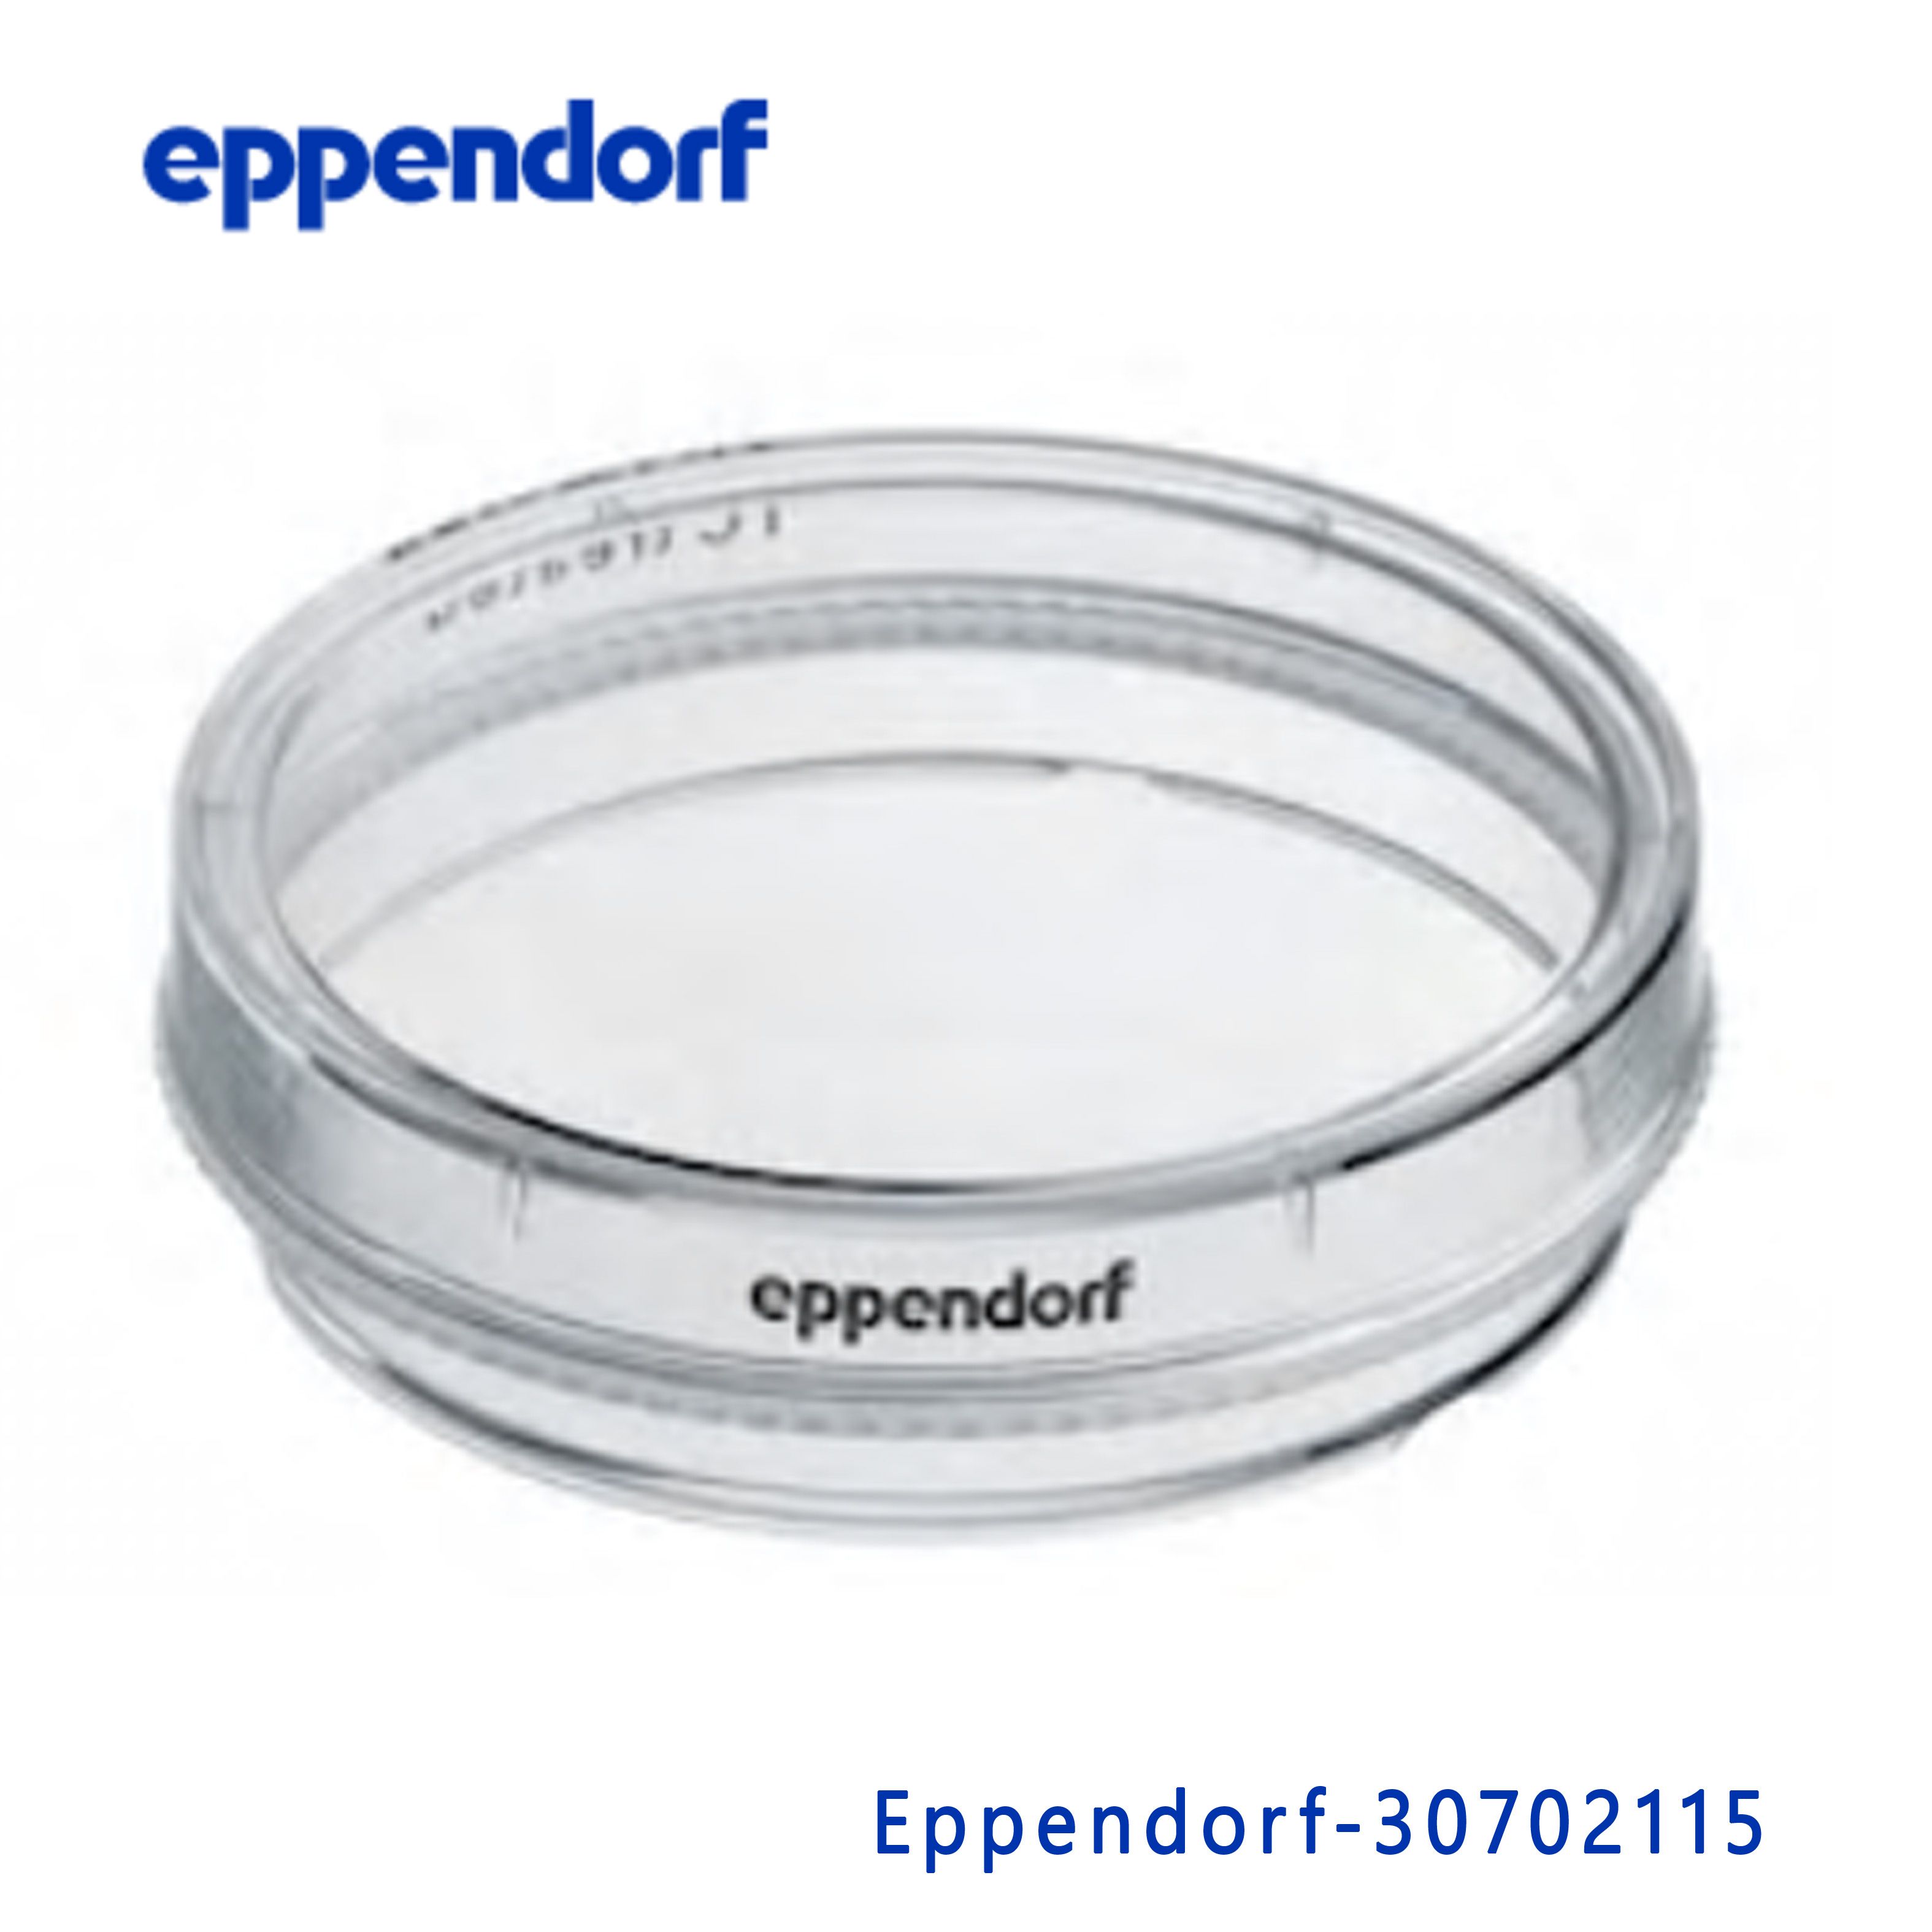 艾本德Eppendorf 30702115 100mm细胞培养皿,TC处理, 无菌,无细胞毒性